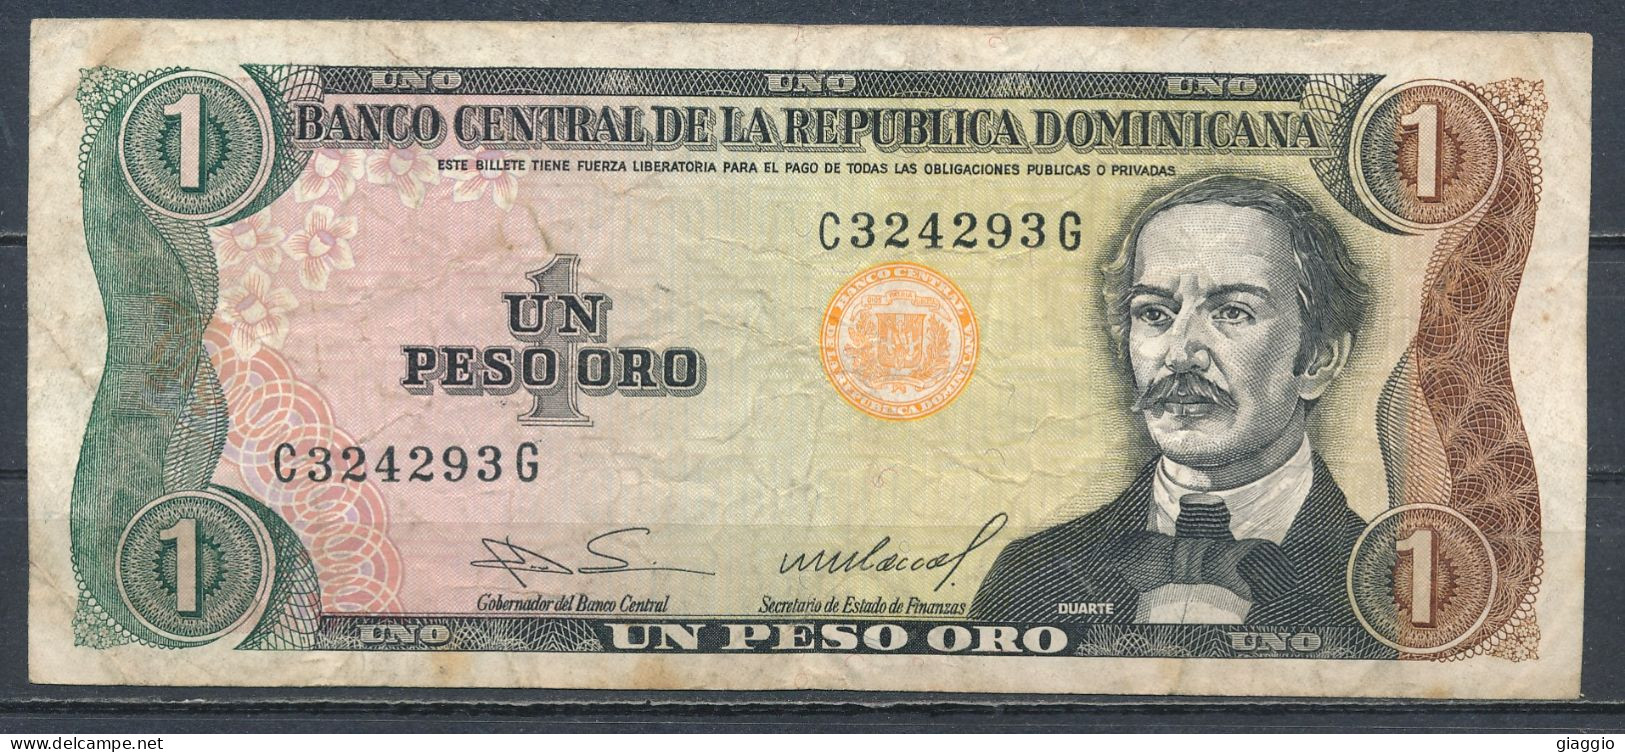 °°° REPUBBLICA DOMINICANA 1 PESO ORO 1984 °°° - Dominicana